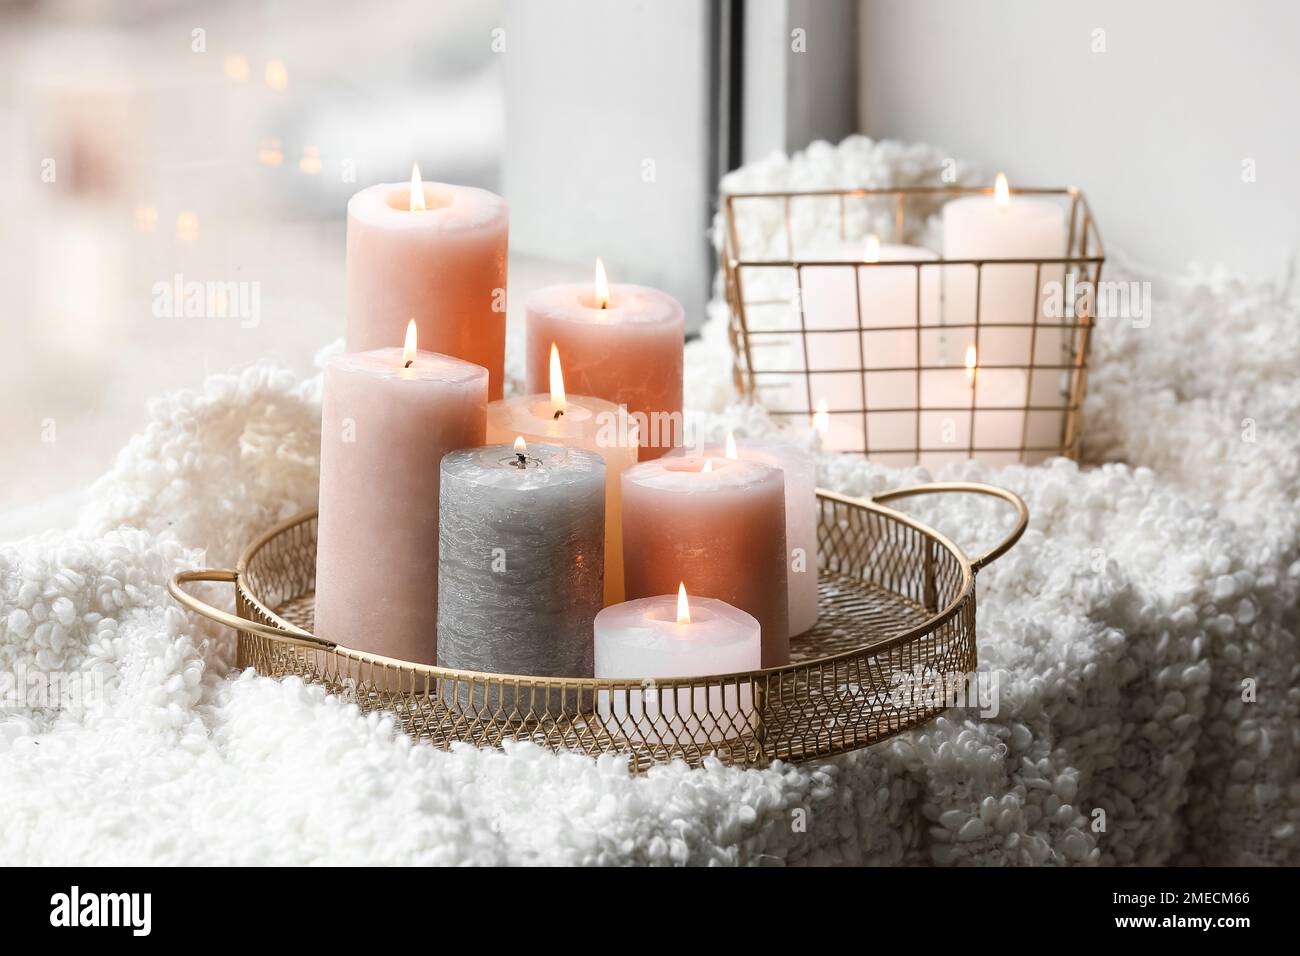 Plateau doré et panier avec bougies allumées sur couverture en laine au  seuil de la fenêtre Photo Stock - Alamy